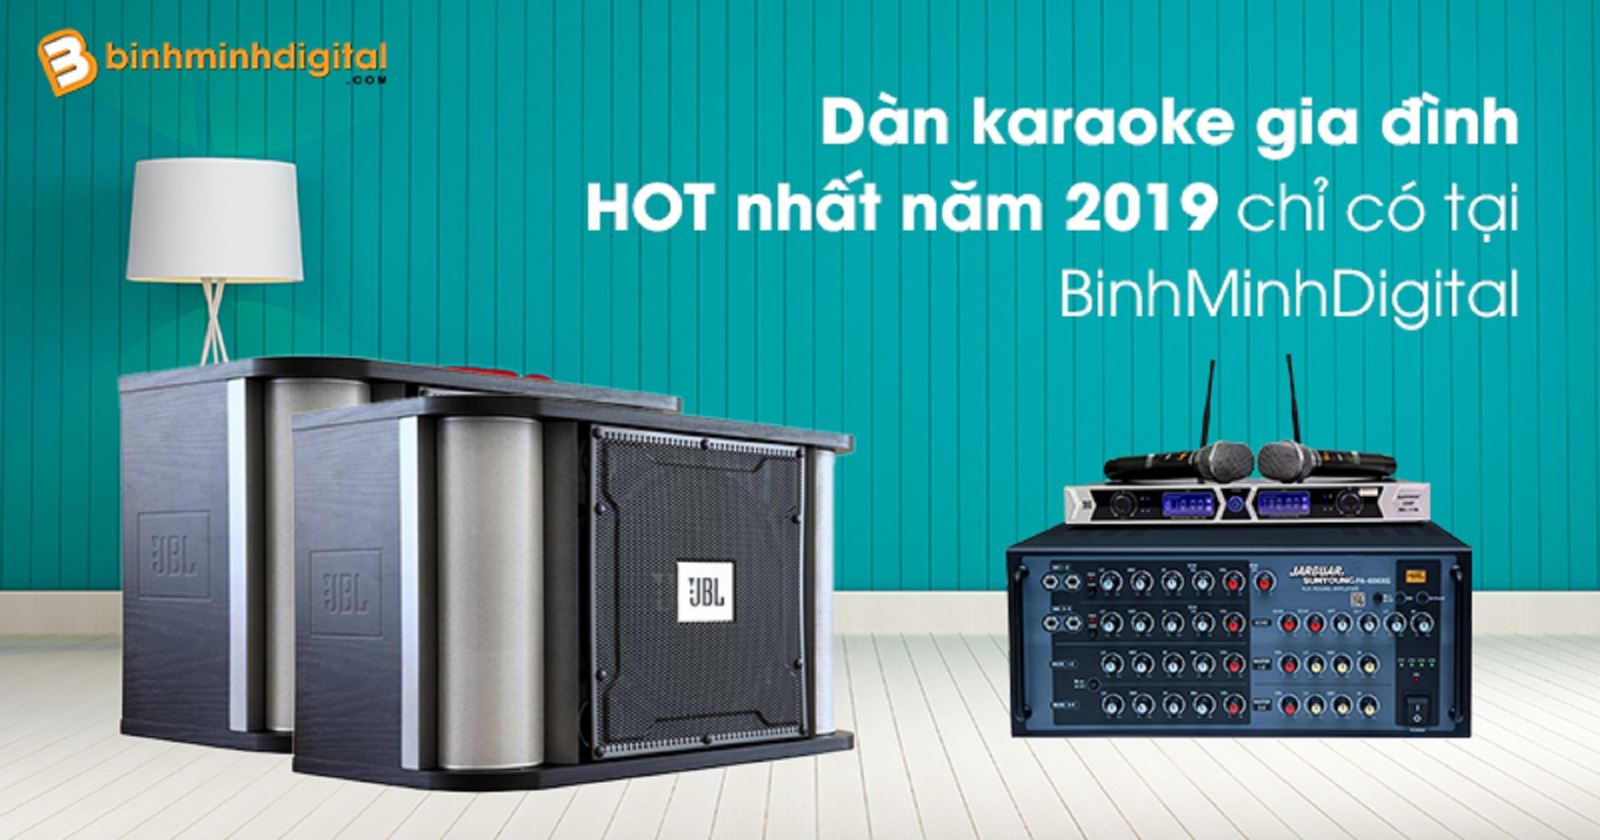 Dàn karaoke gia đình HOT nhất năm 2019 chỉ có tại BinhMinhDigital